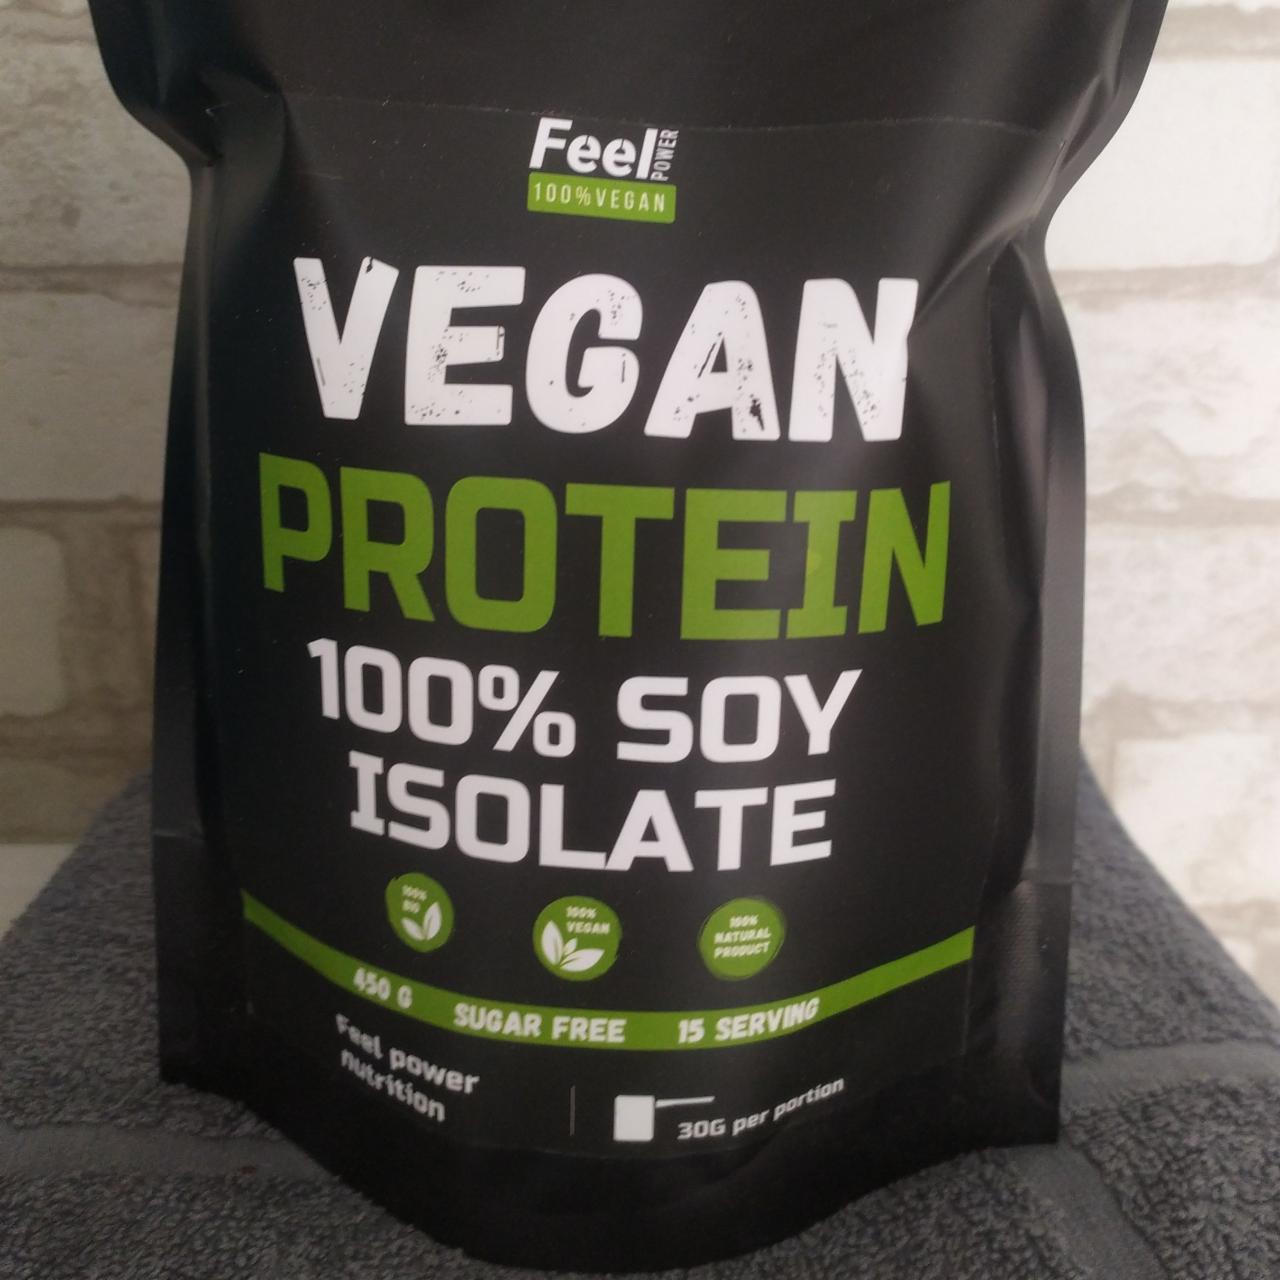 Фото - Протеин vegan protein 100% soj isolate Feel power